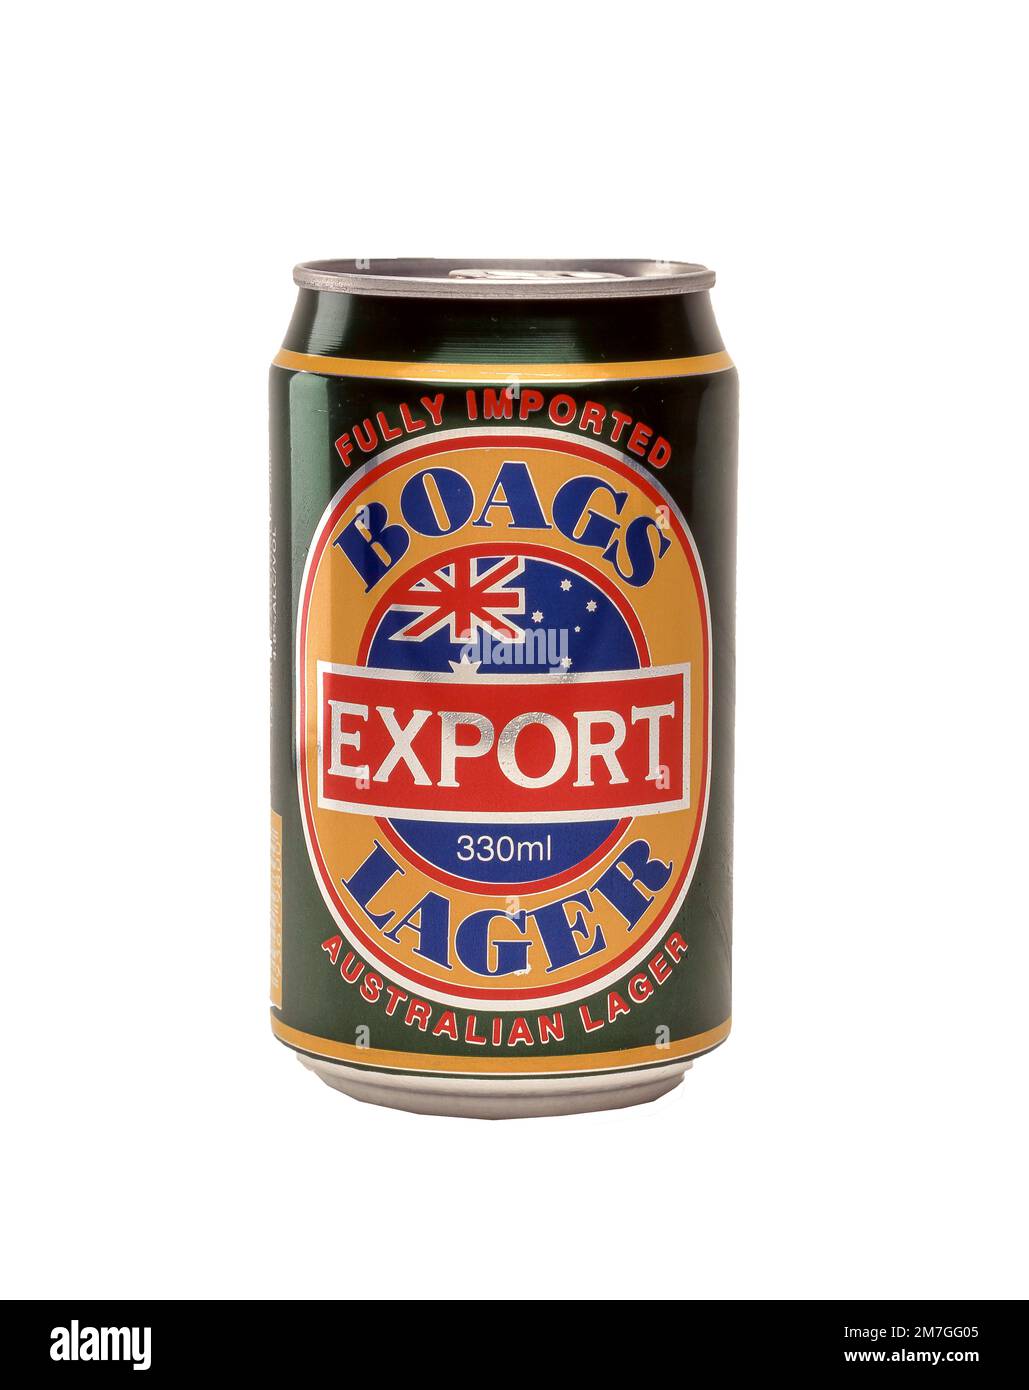 CAN of Boag's Brewery esportazione australiana lager, Sydney, nuovo Galles del Sud, Australia Foto Stock